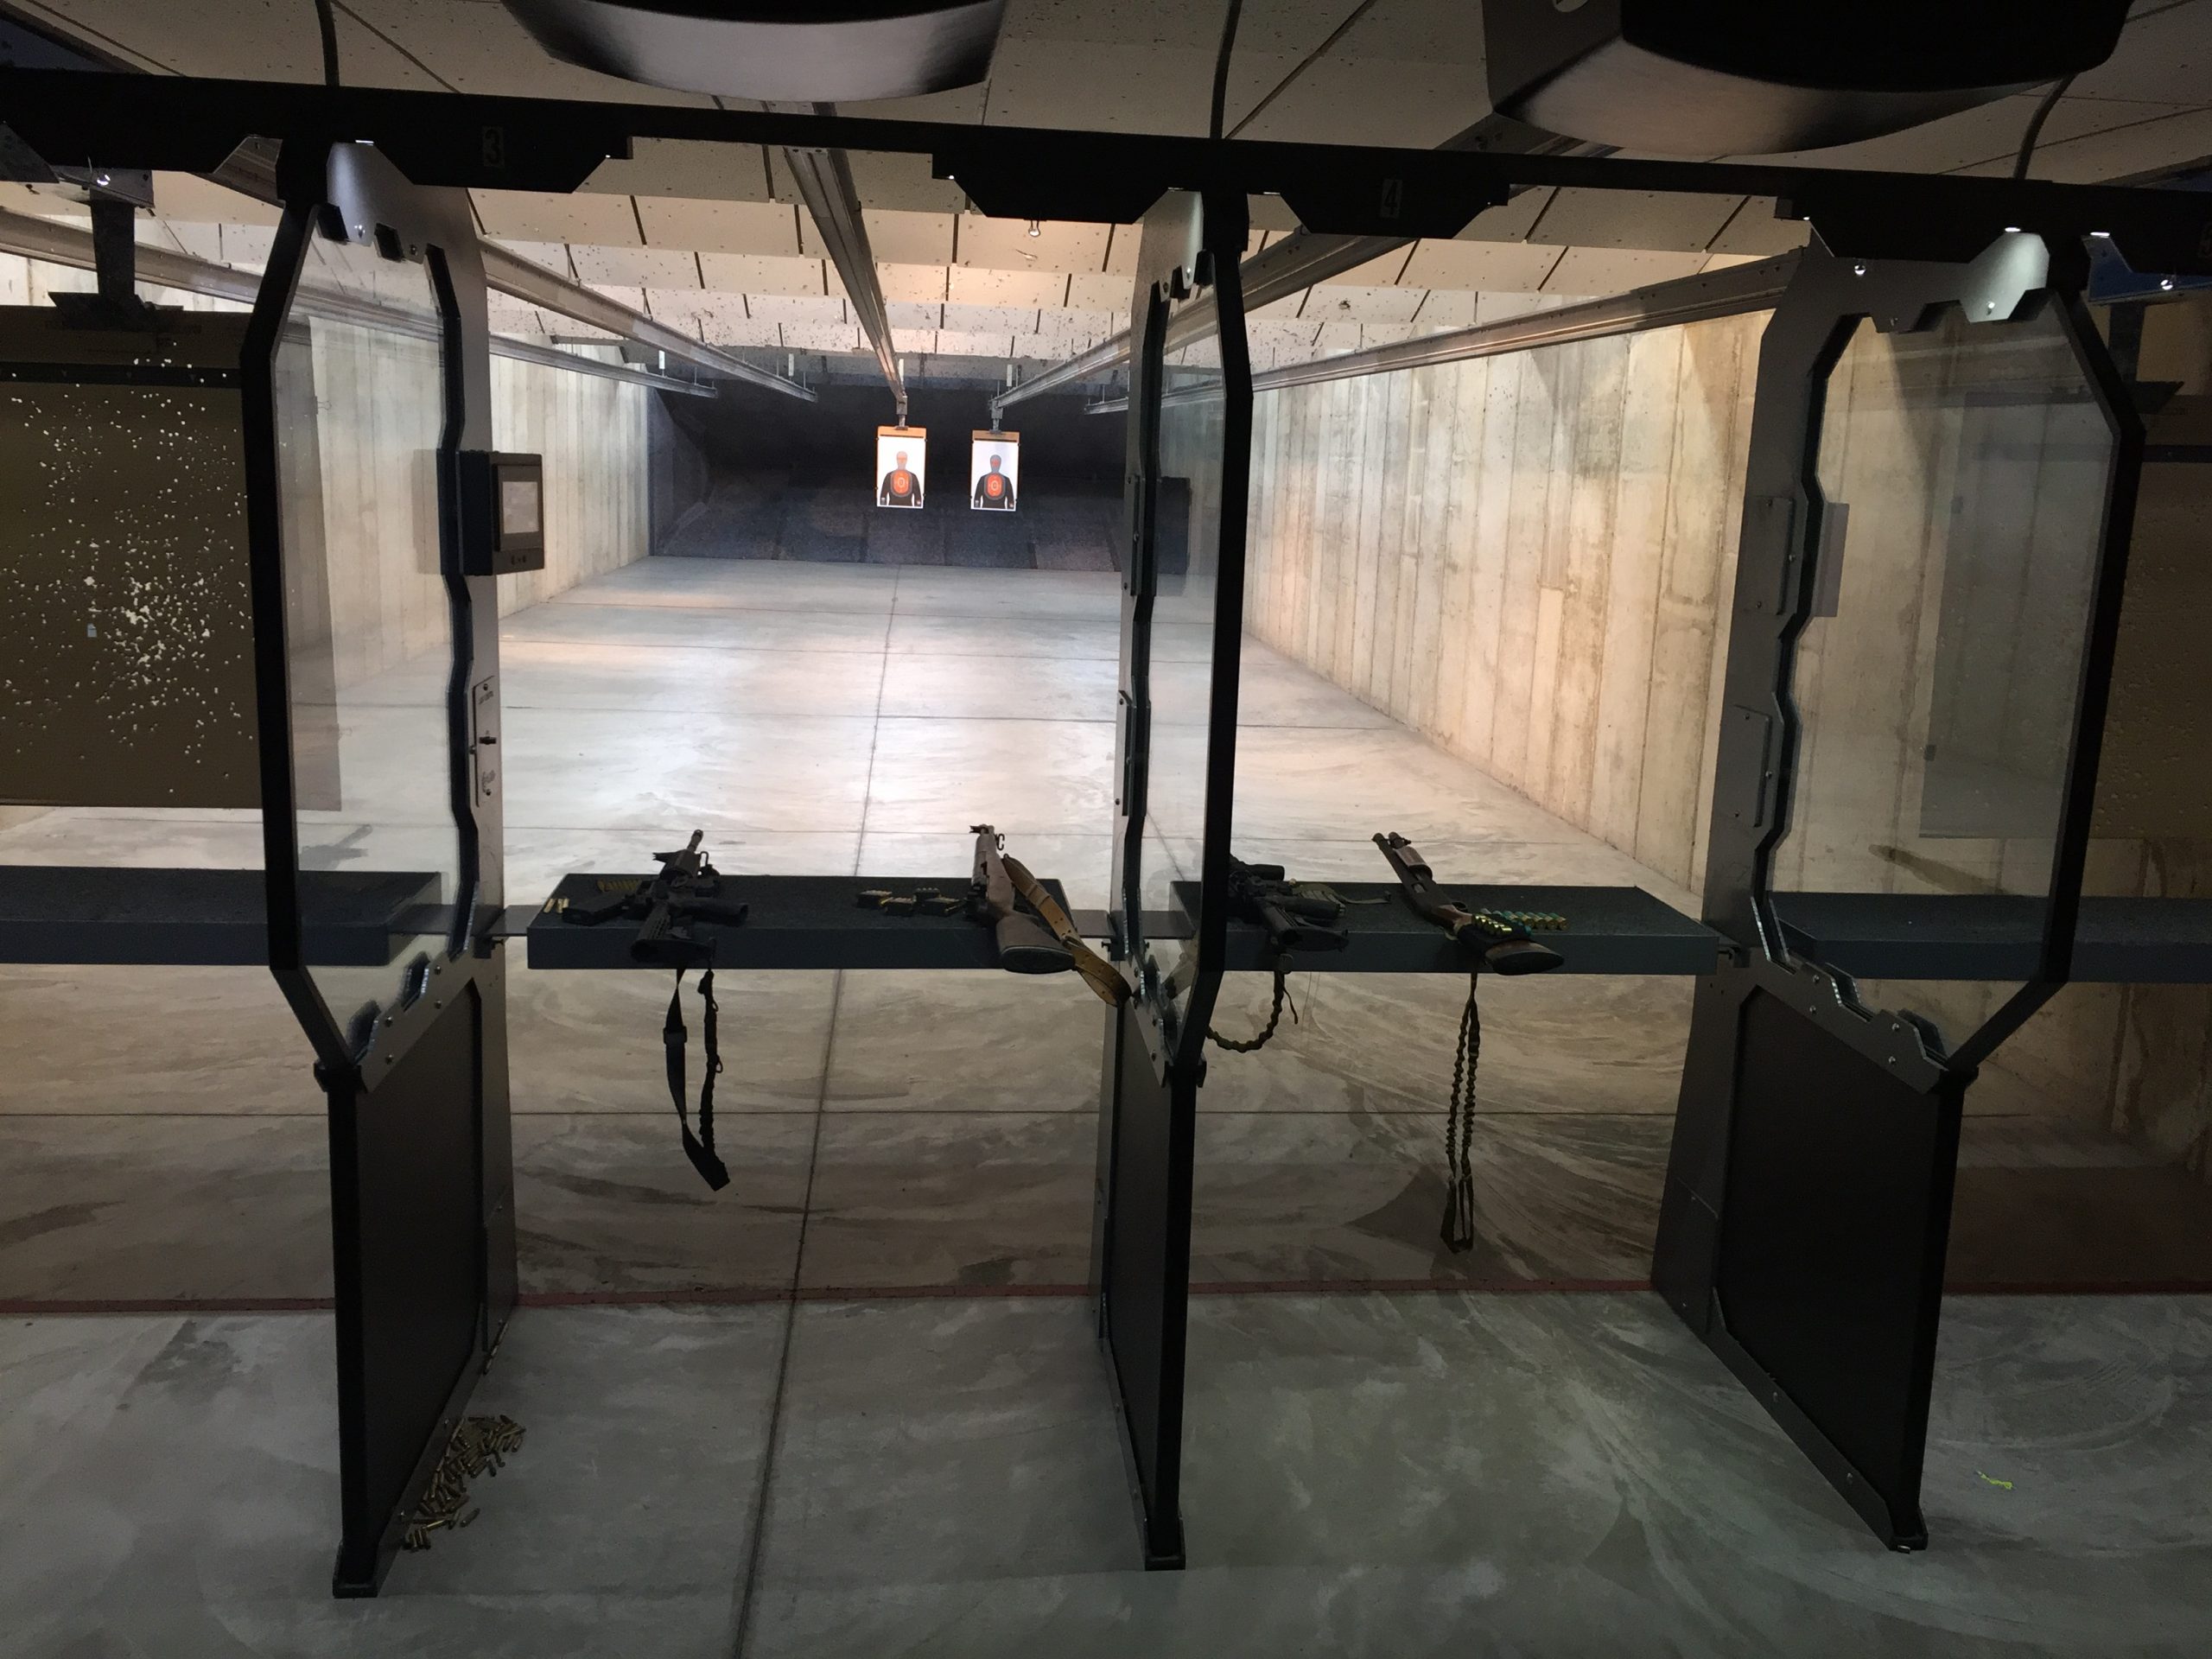 Sharpshooting Indoor Range and Gun Shop